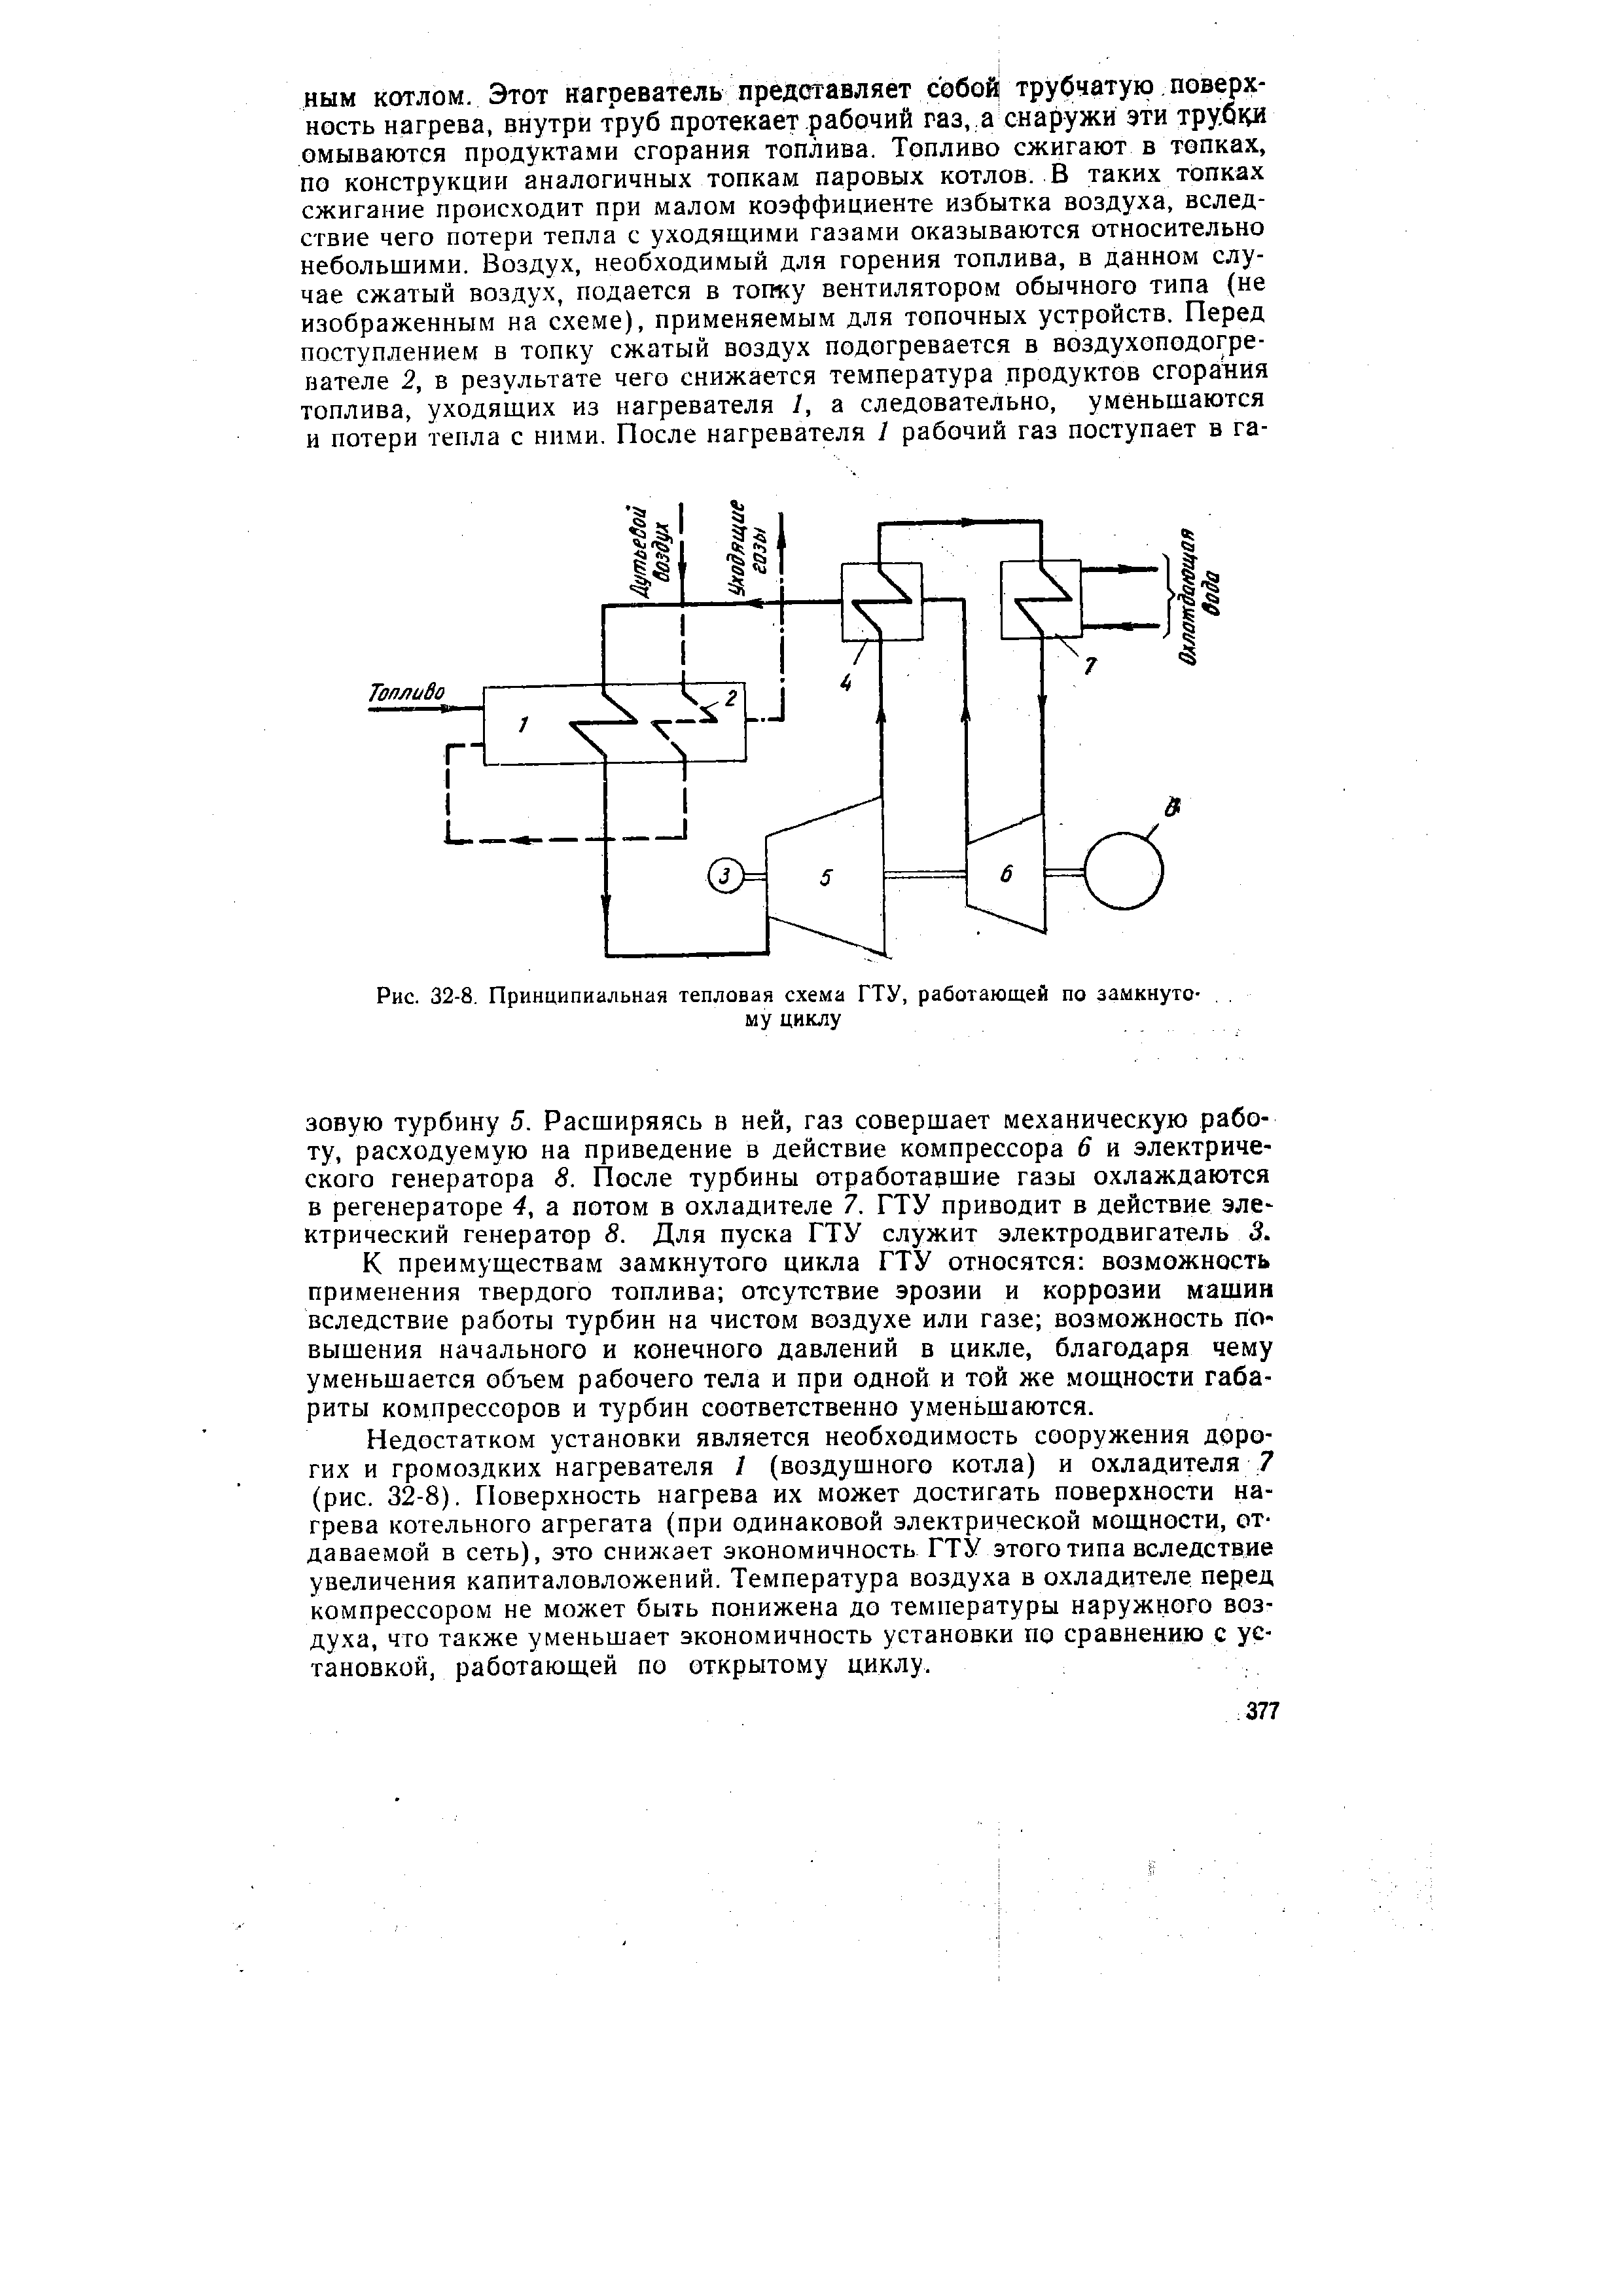 Рис. 32-8. Принципиальная тепловая схема ГТУ, работающей по замкнутому циклу
